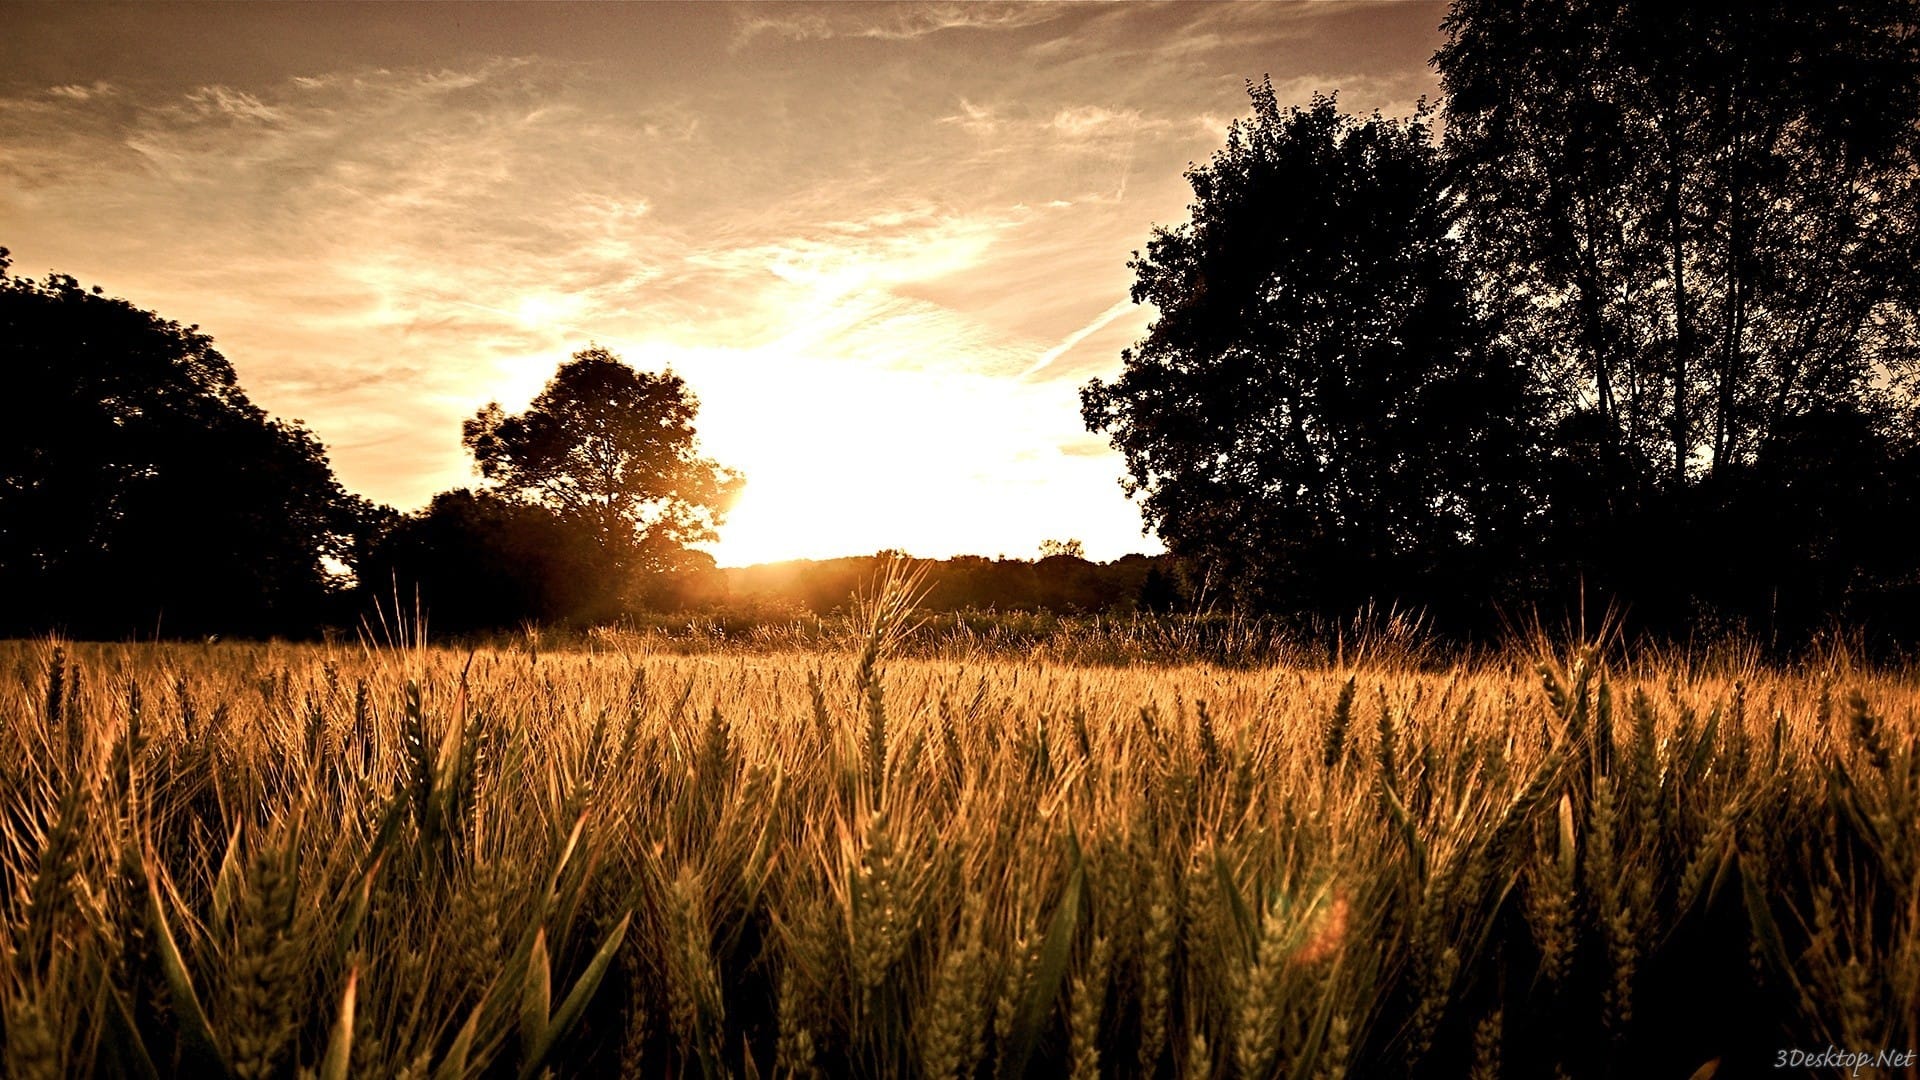 金黄色的小麦唯美风景图片壁纸